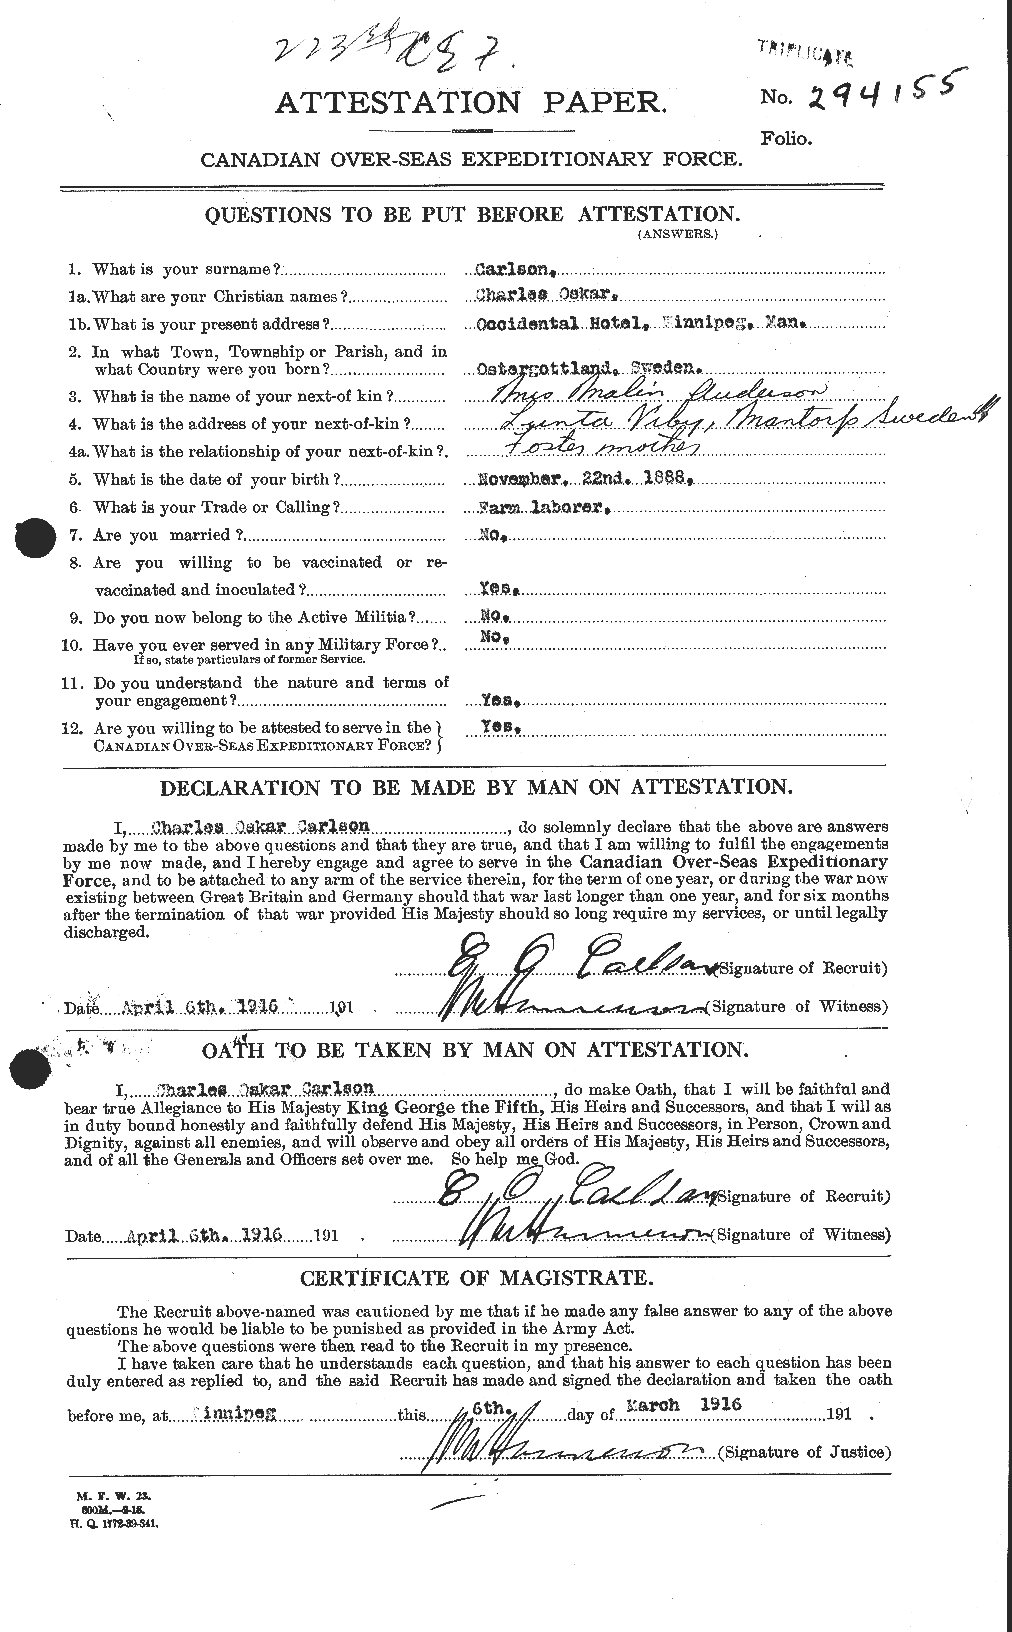 Dossiers du Personnel de la Première Guerre mondiale - CEC 004516a